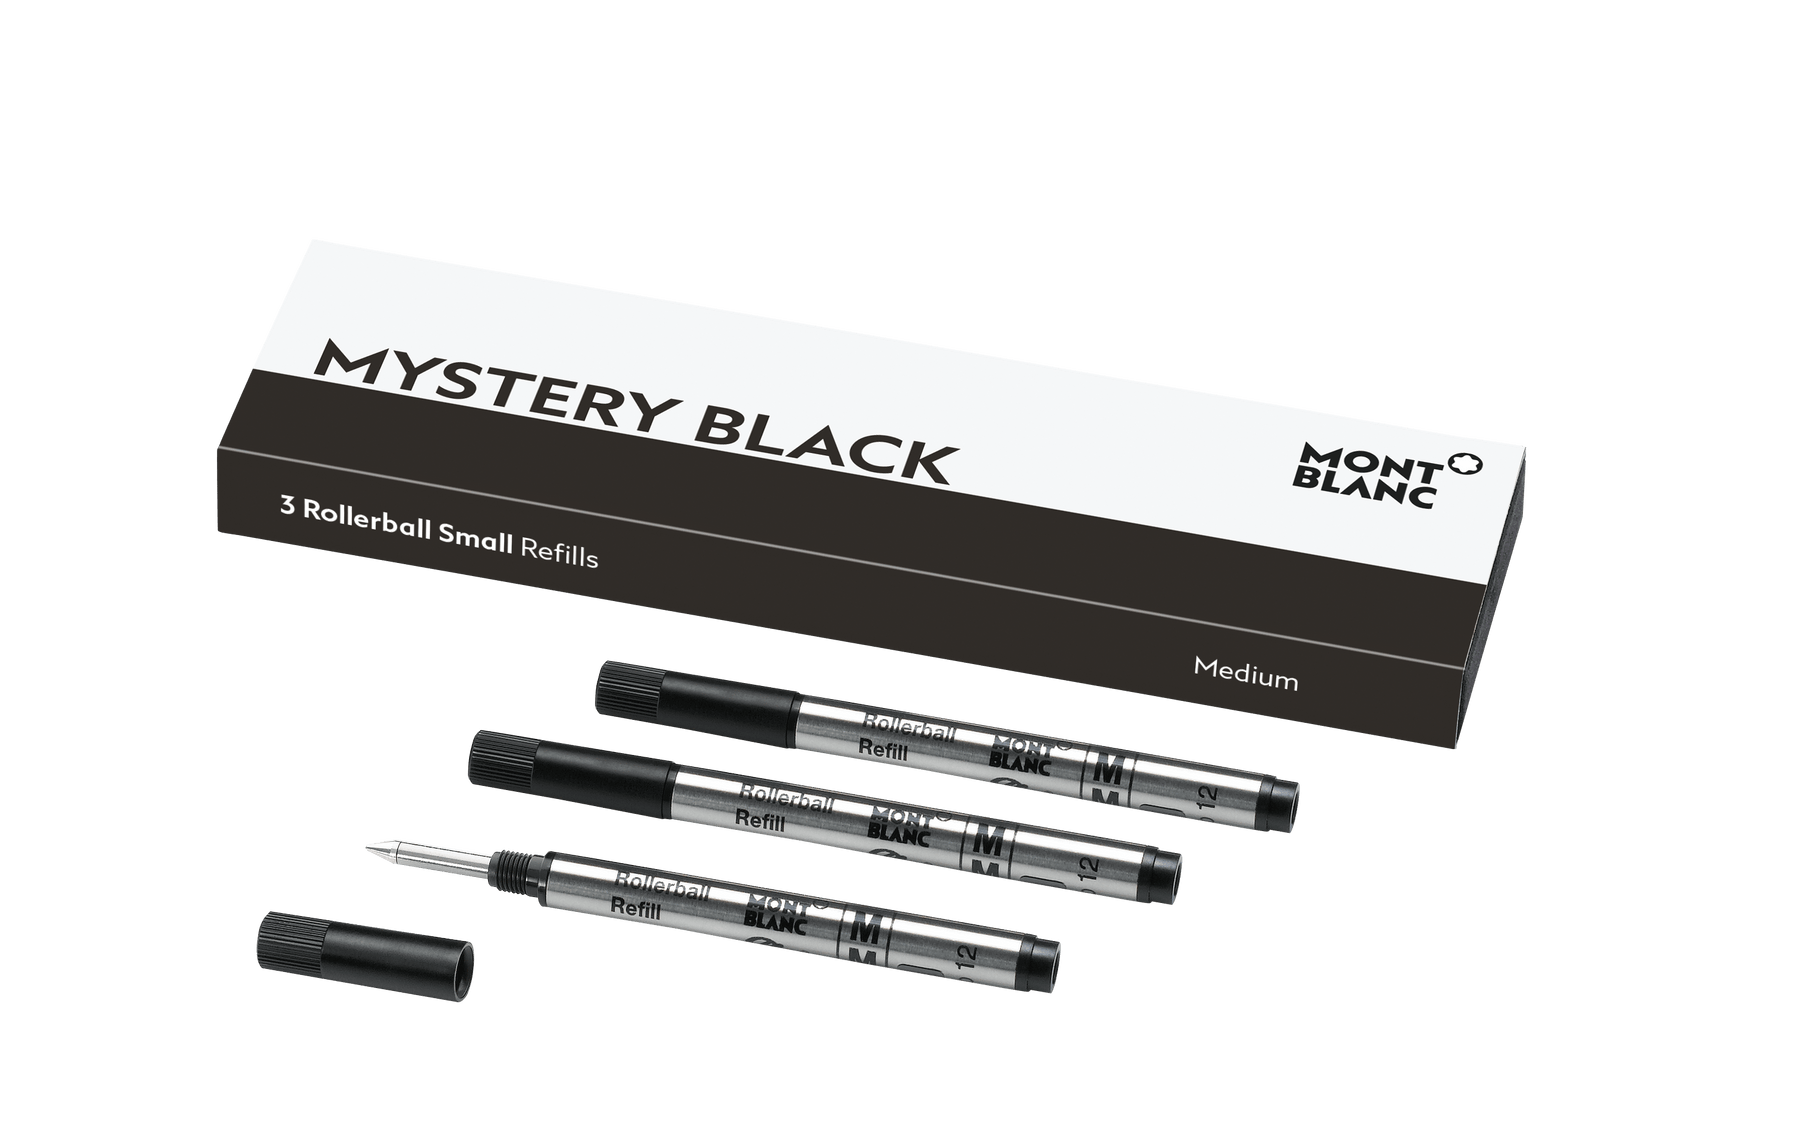 3 Rollerball Small Refills Medium Mystery Black